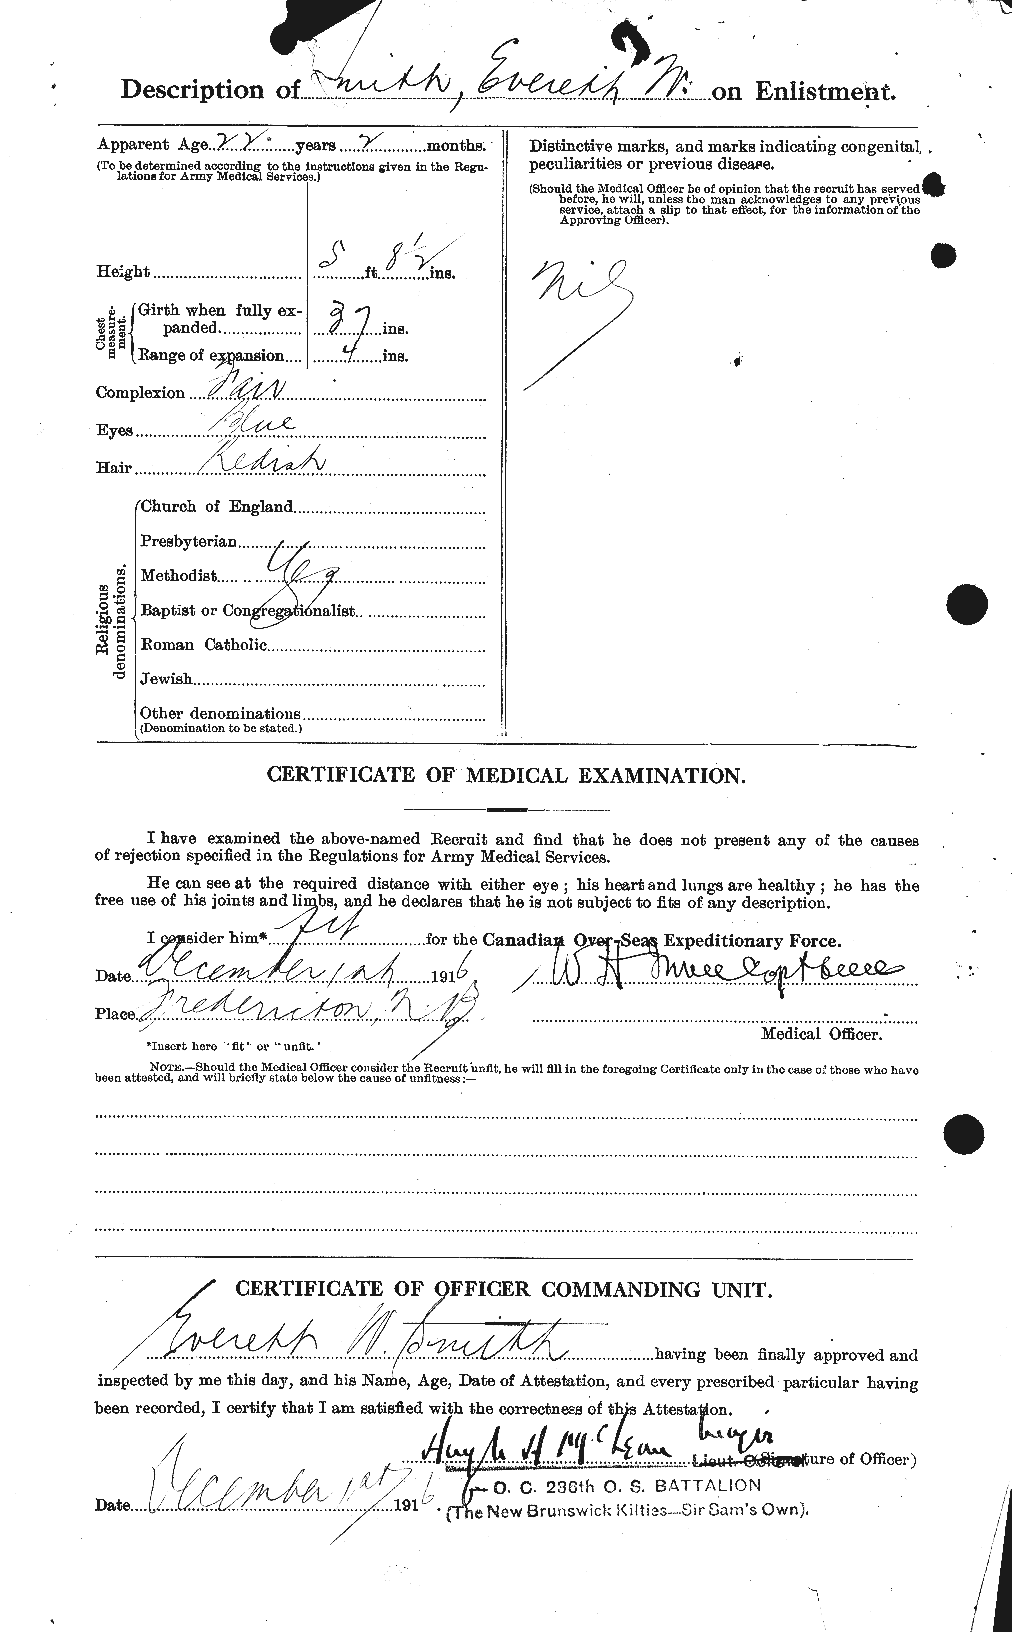 Dossiers du Personnel de la Première Guerre mondiale - CEC 621248b